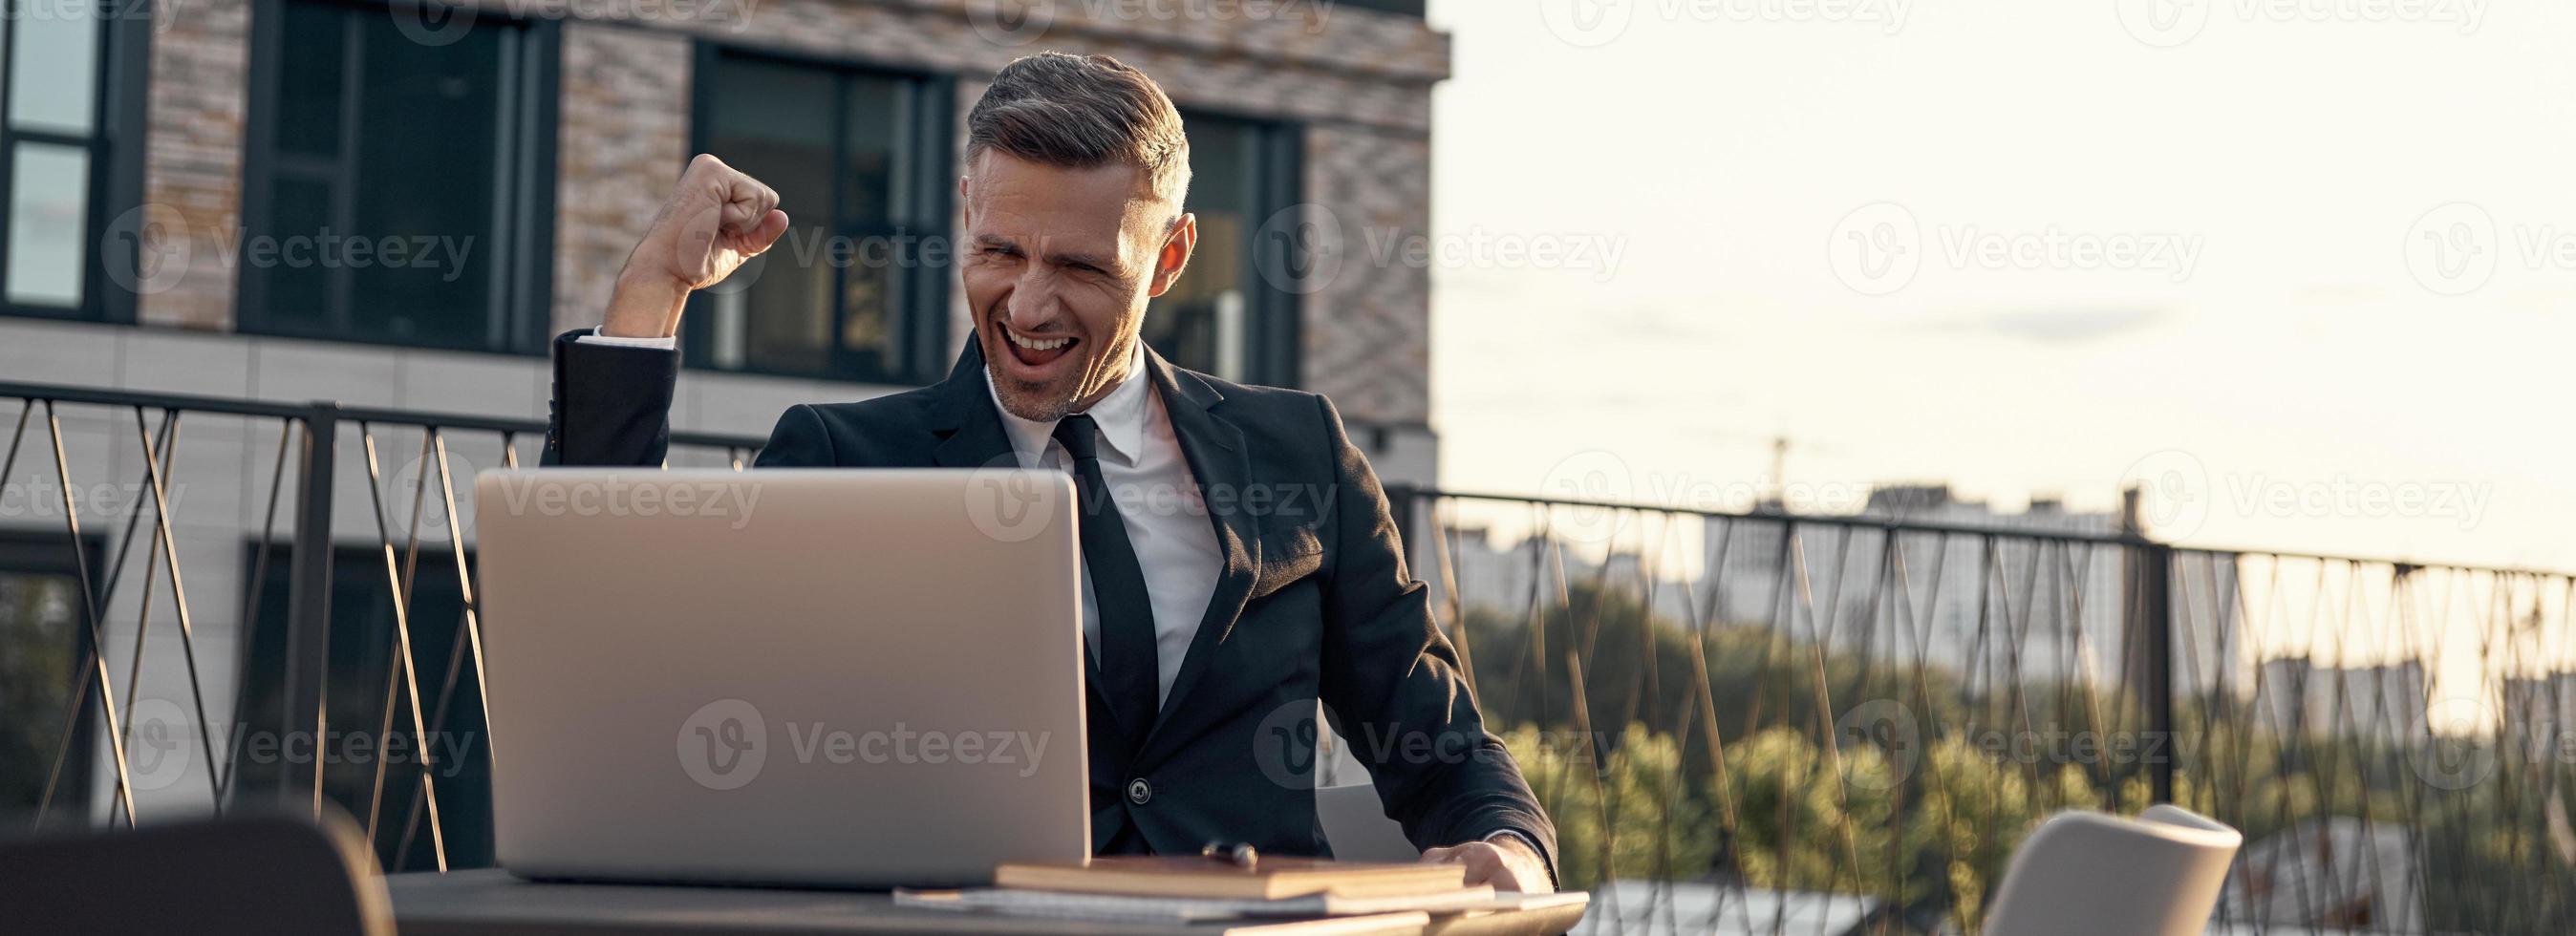 joyeux homme d'affaires mature ayant un appel vidéo sur un ordinateur portable assis dans un café à l'extérieur photo